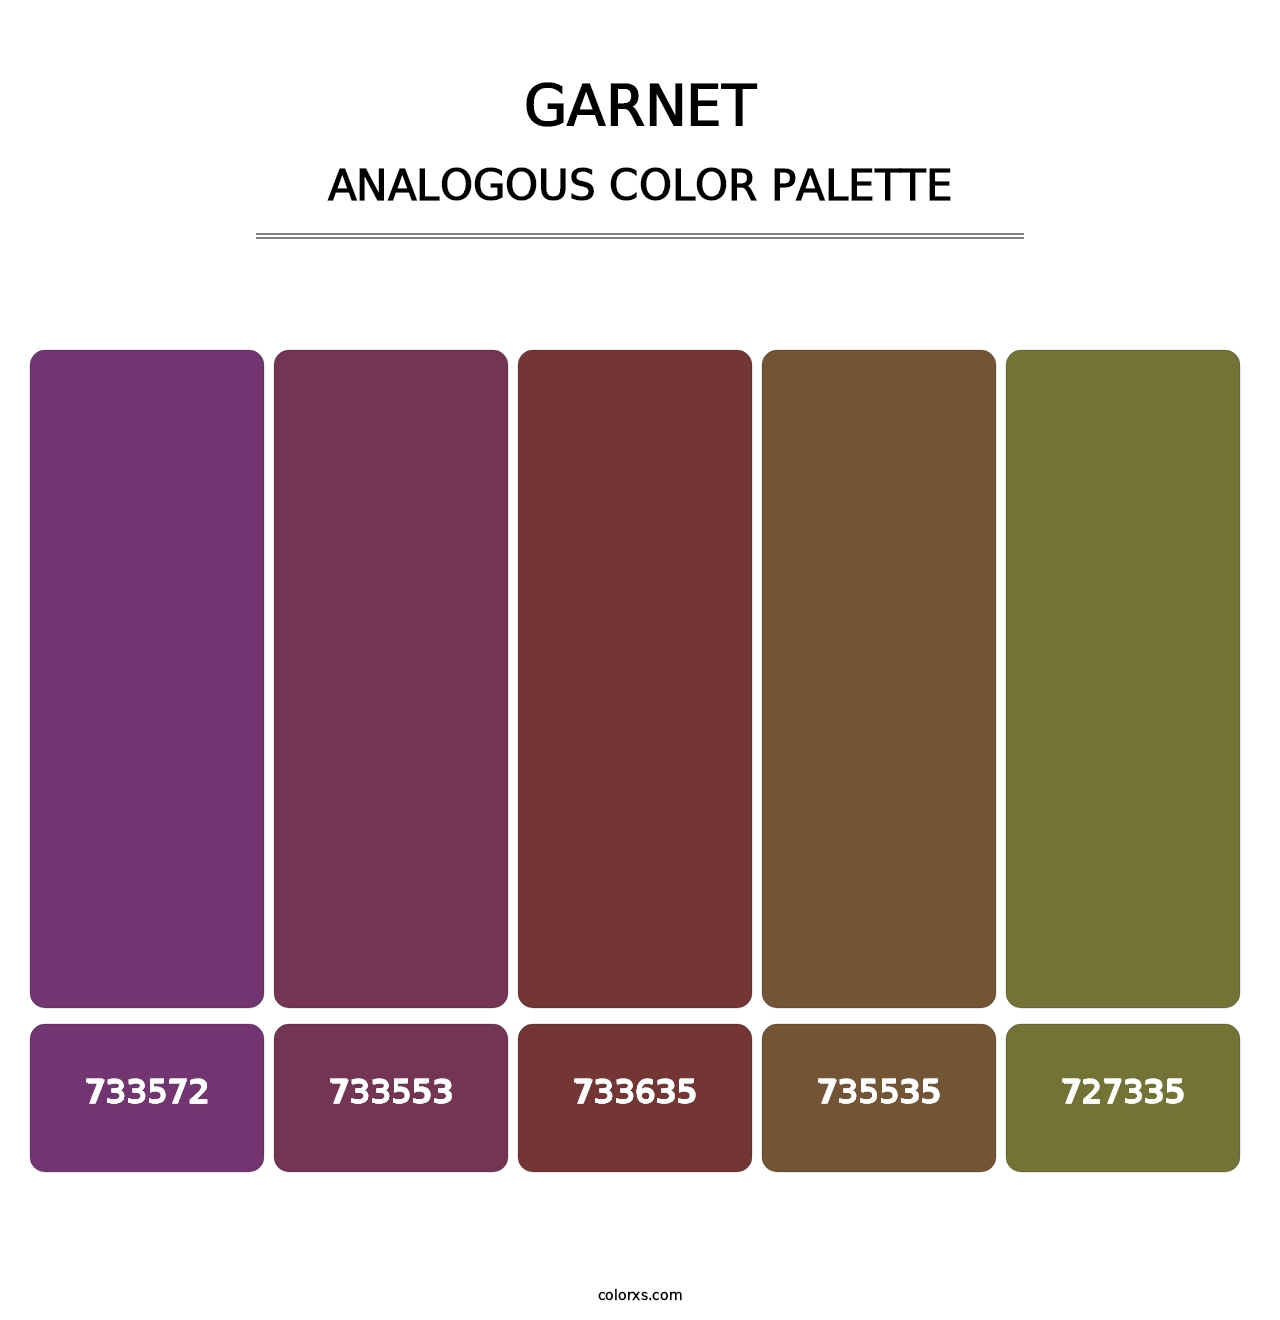 Garnet - Analogous Color Palette